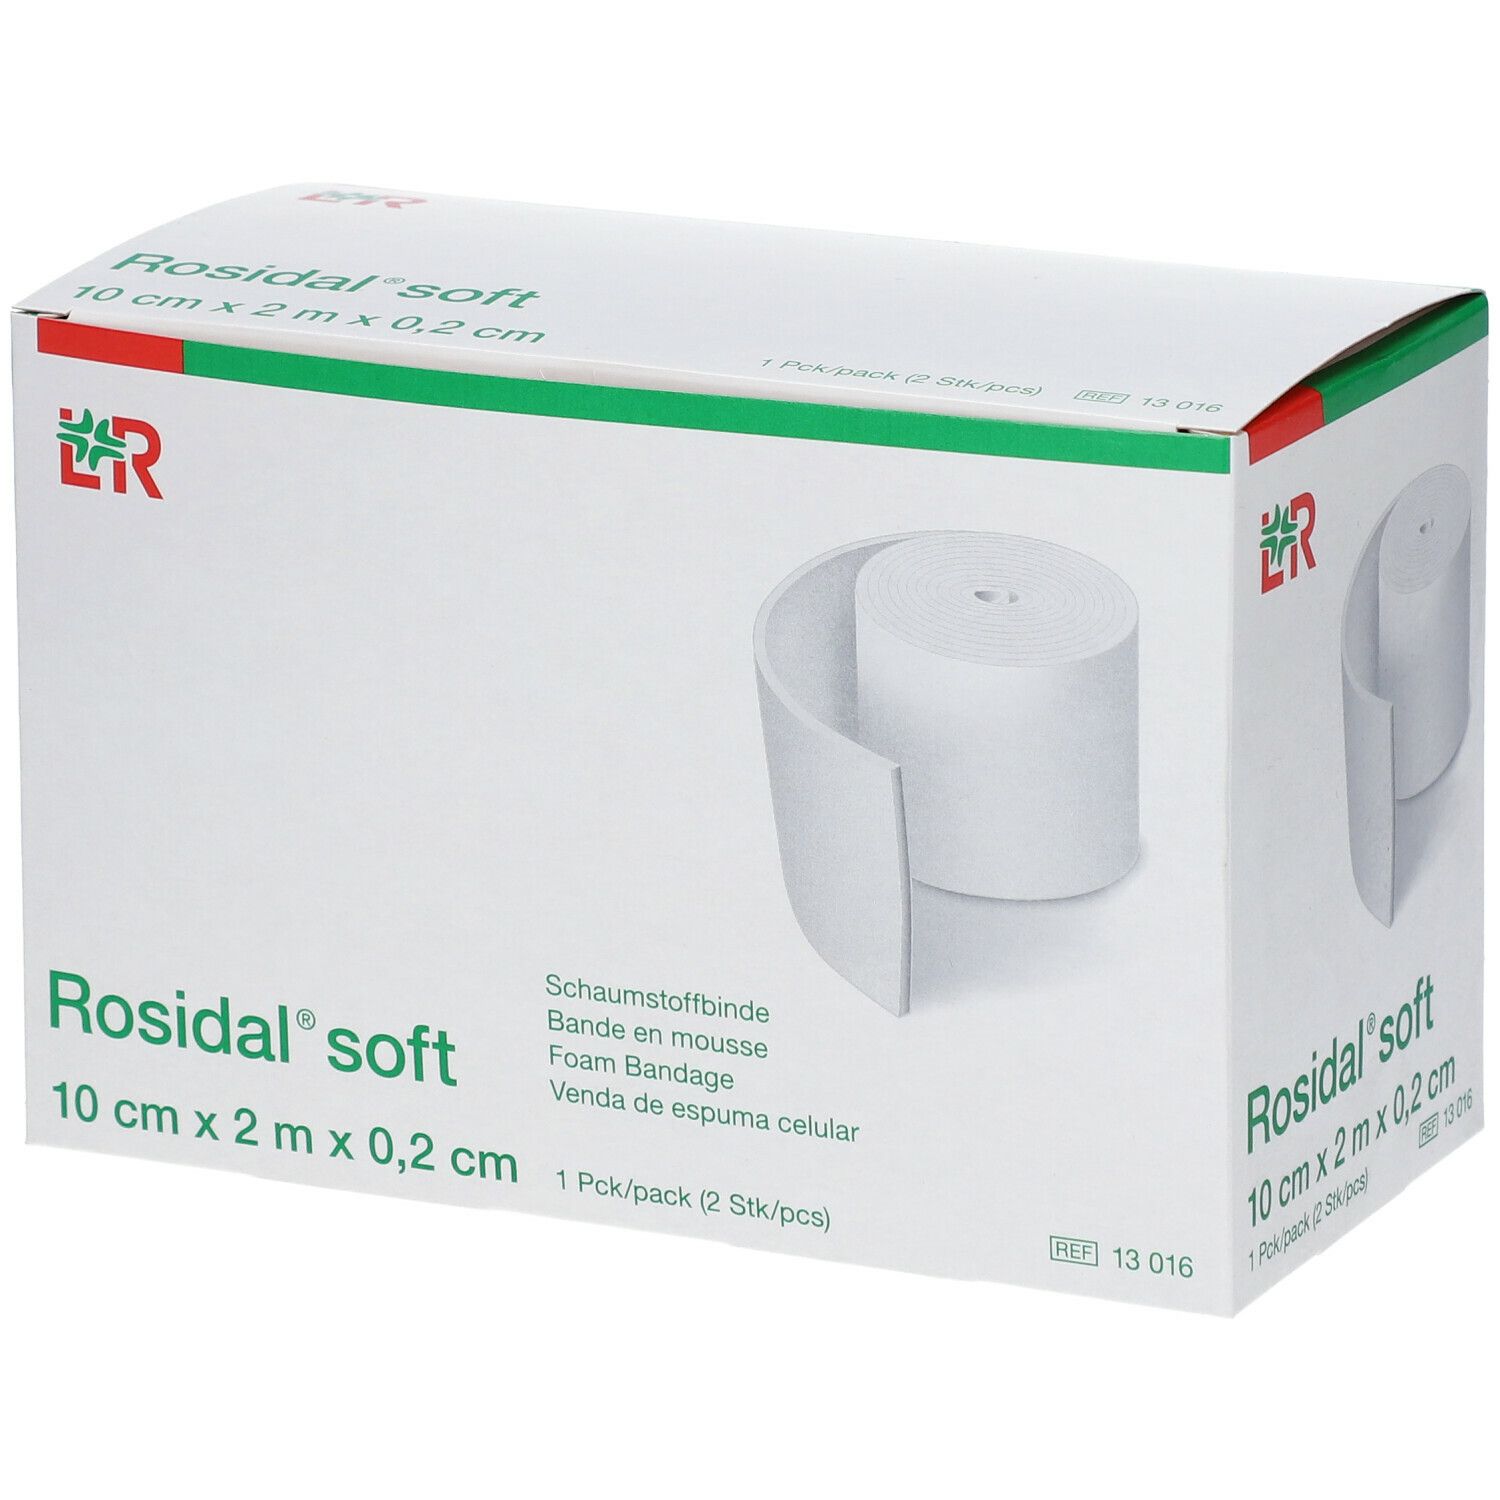 Rosidal Soft 10cm x 0.2cm x 2m 13016